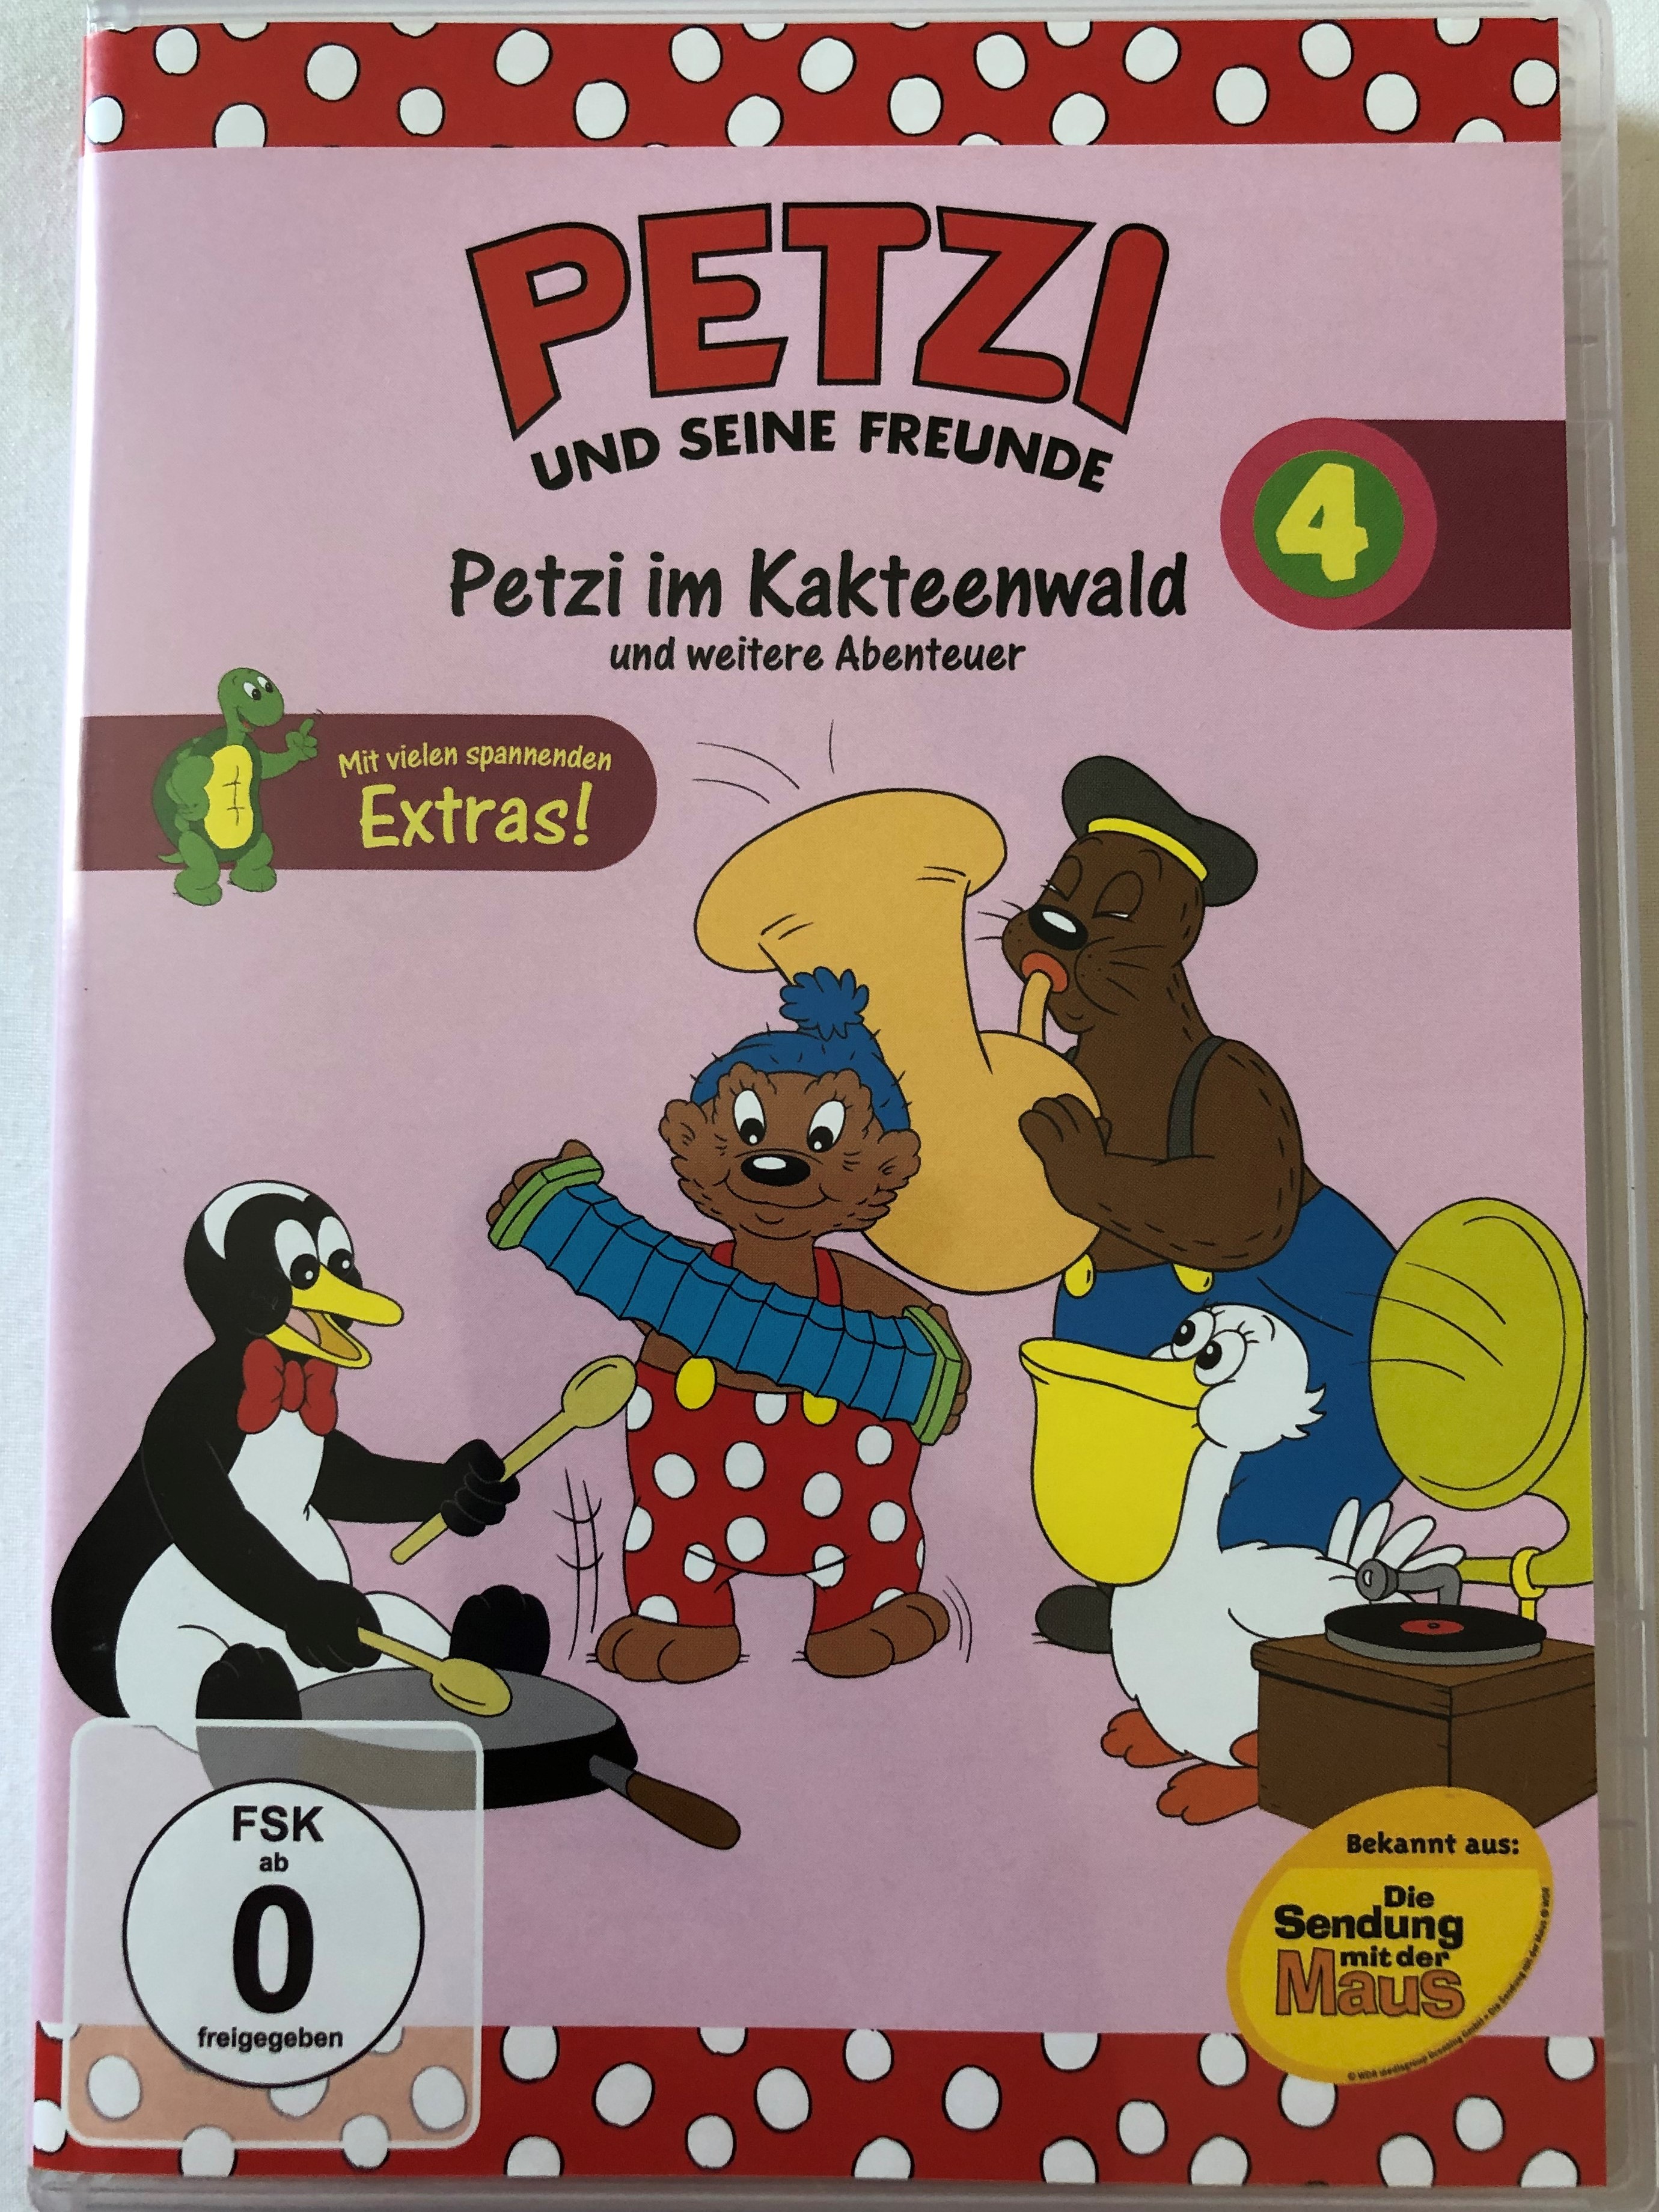 petzi-und-seine-freunde-4.-dvd-2004-petzi-and-his-friends-petzi-im-kakteenwald-und-weitere-abenteuer-9-episodes-on-disc-classic-german-cartoon-1-.jpg